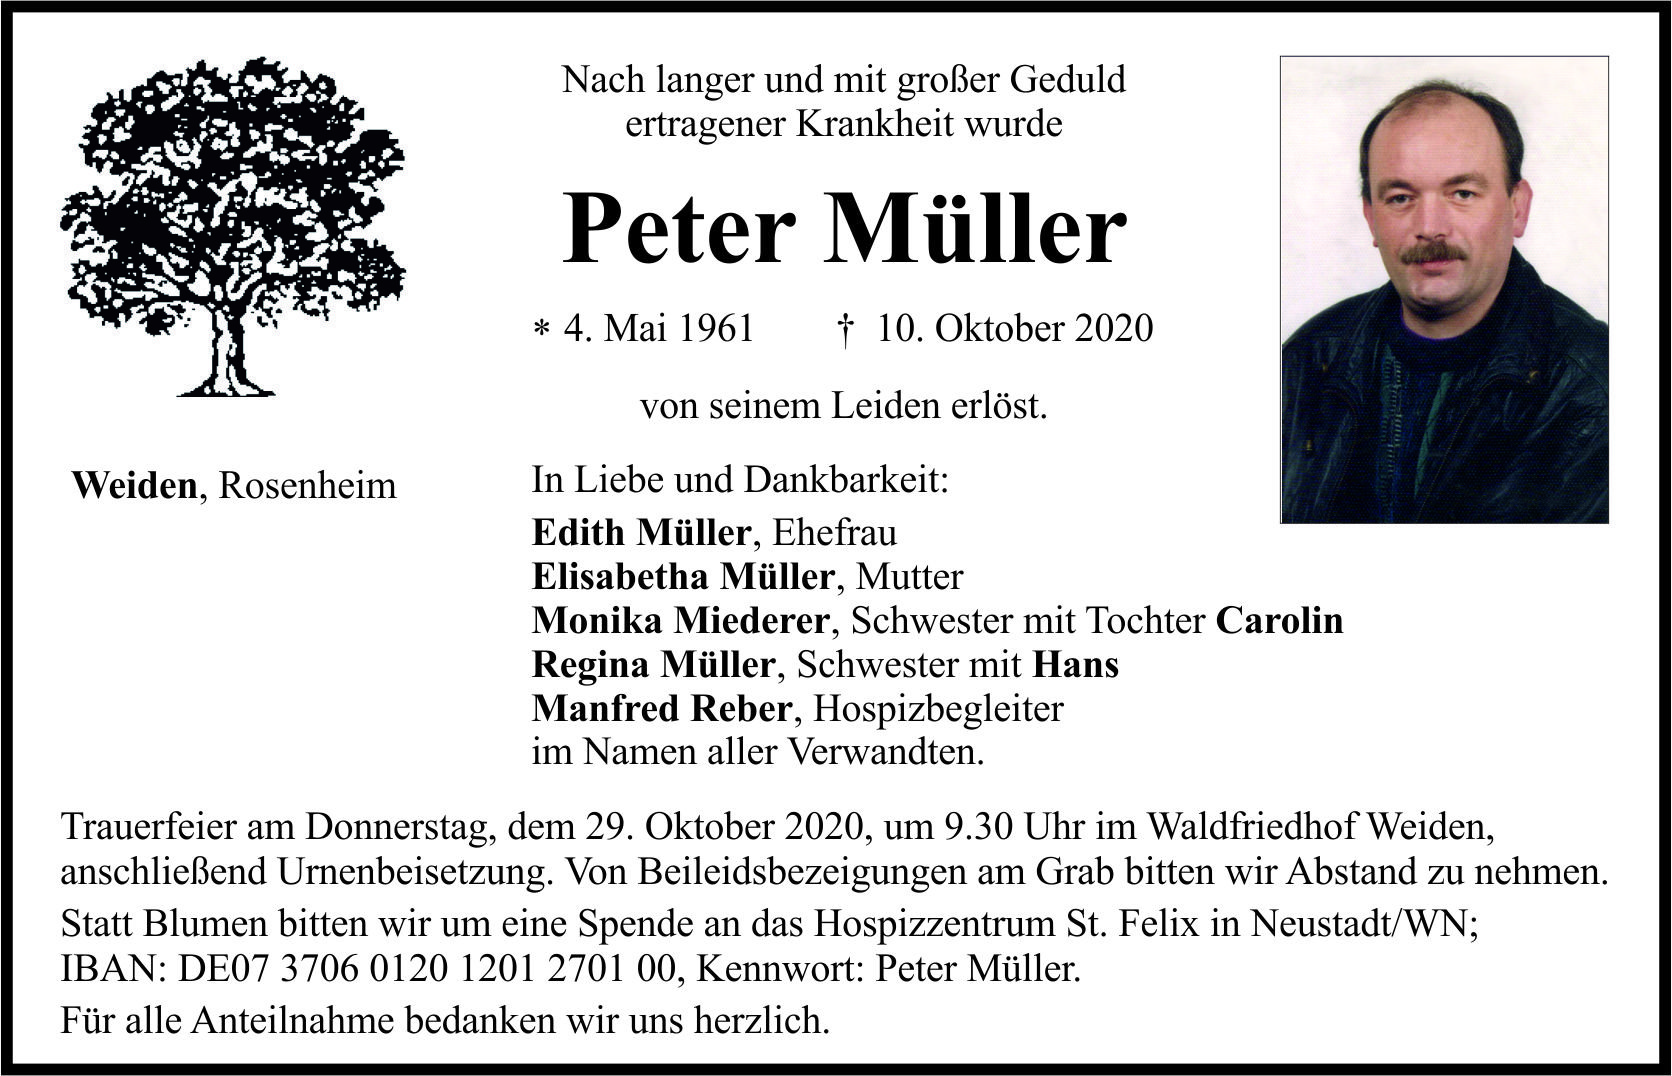 Traueranzeige Peter Müller, Weiden